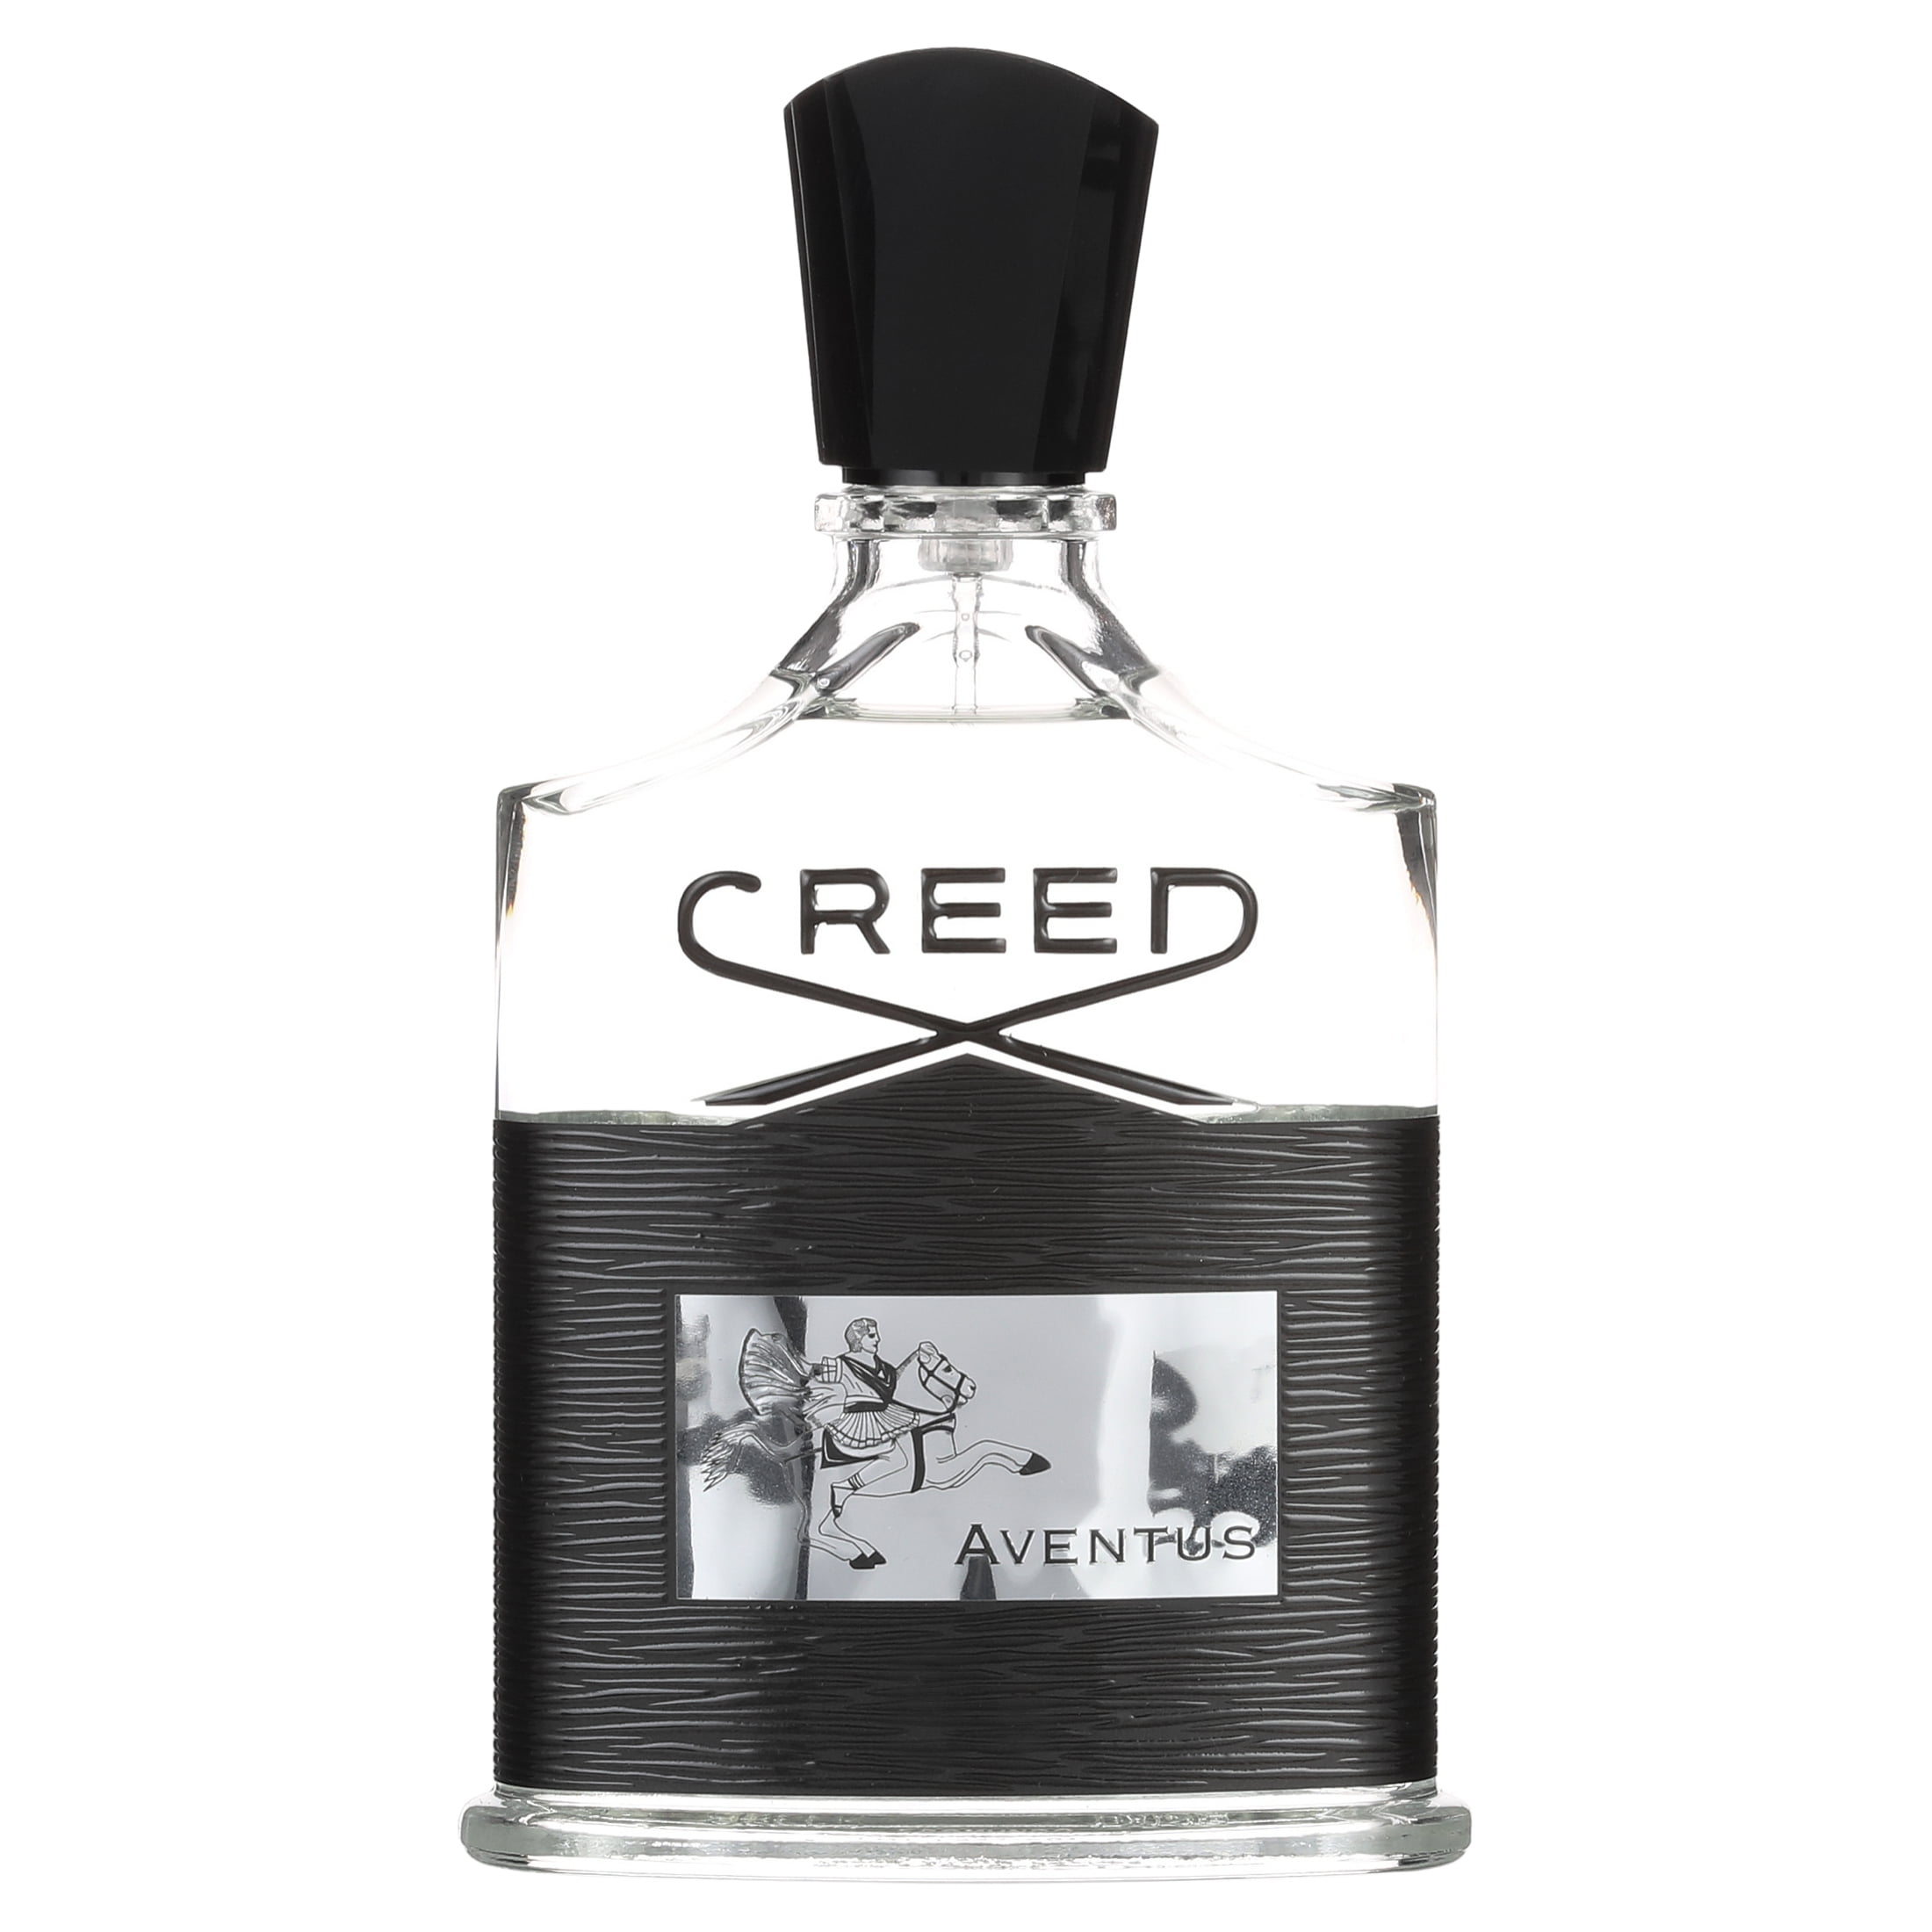 Creed Aventus Eau de Parfum, Cologne for Men, 1.7 Oz Full Size